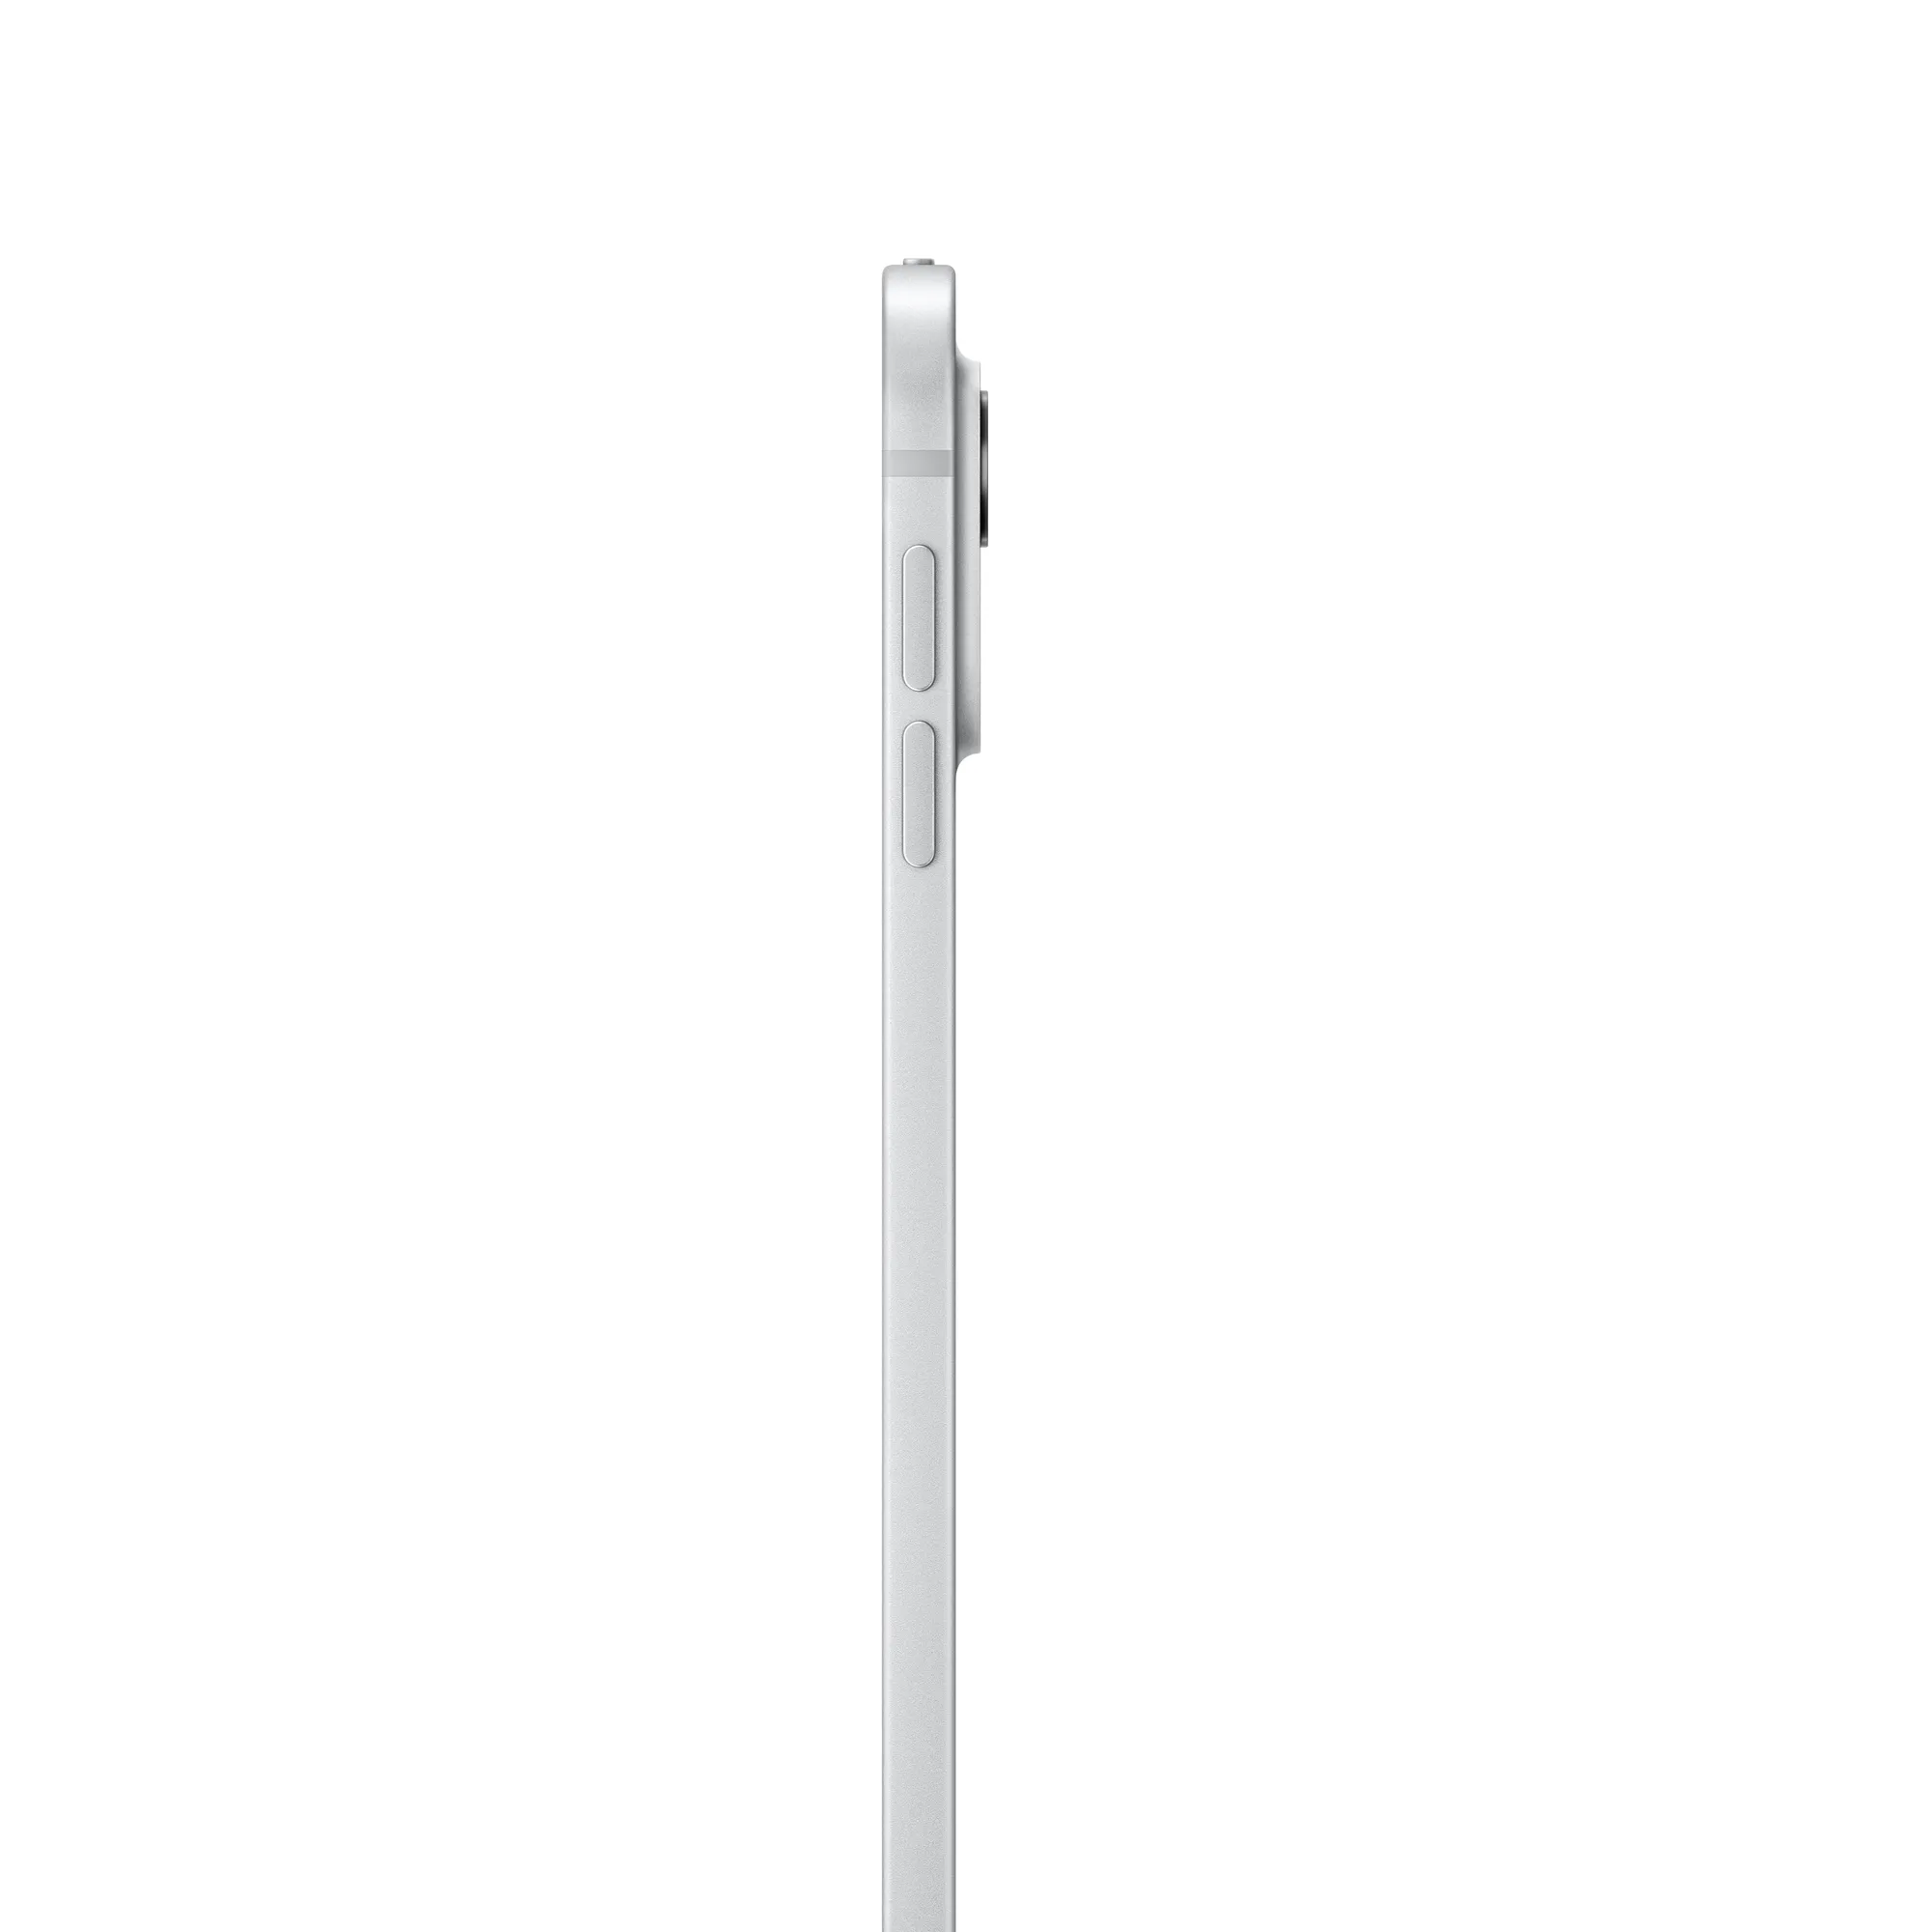 13 hüvelykes iPad Pro, Wi-Fi, 2 TB, normál üveg – ezüst